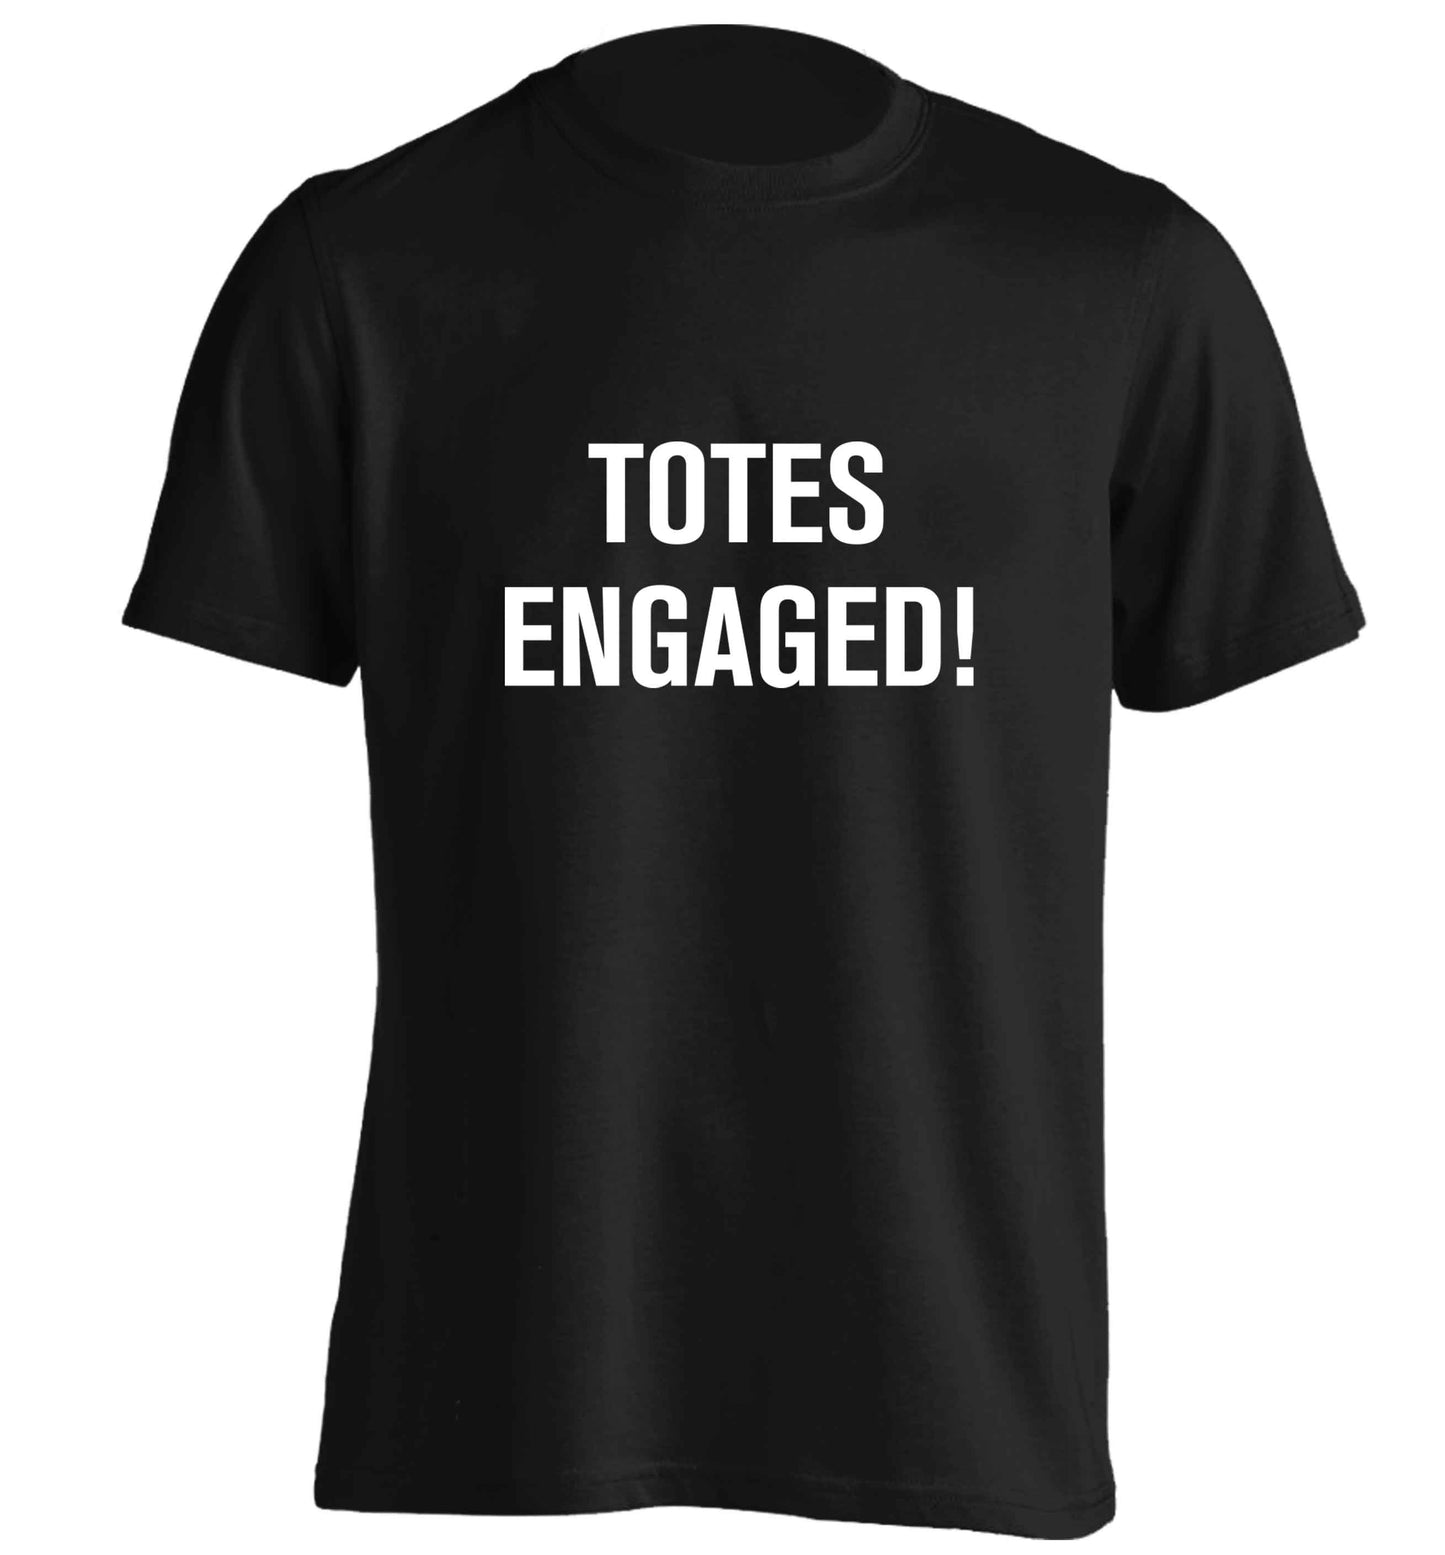 Totes engaged adults unisex black Tshirt 2XL